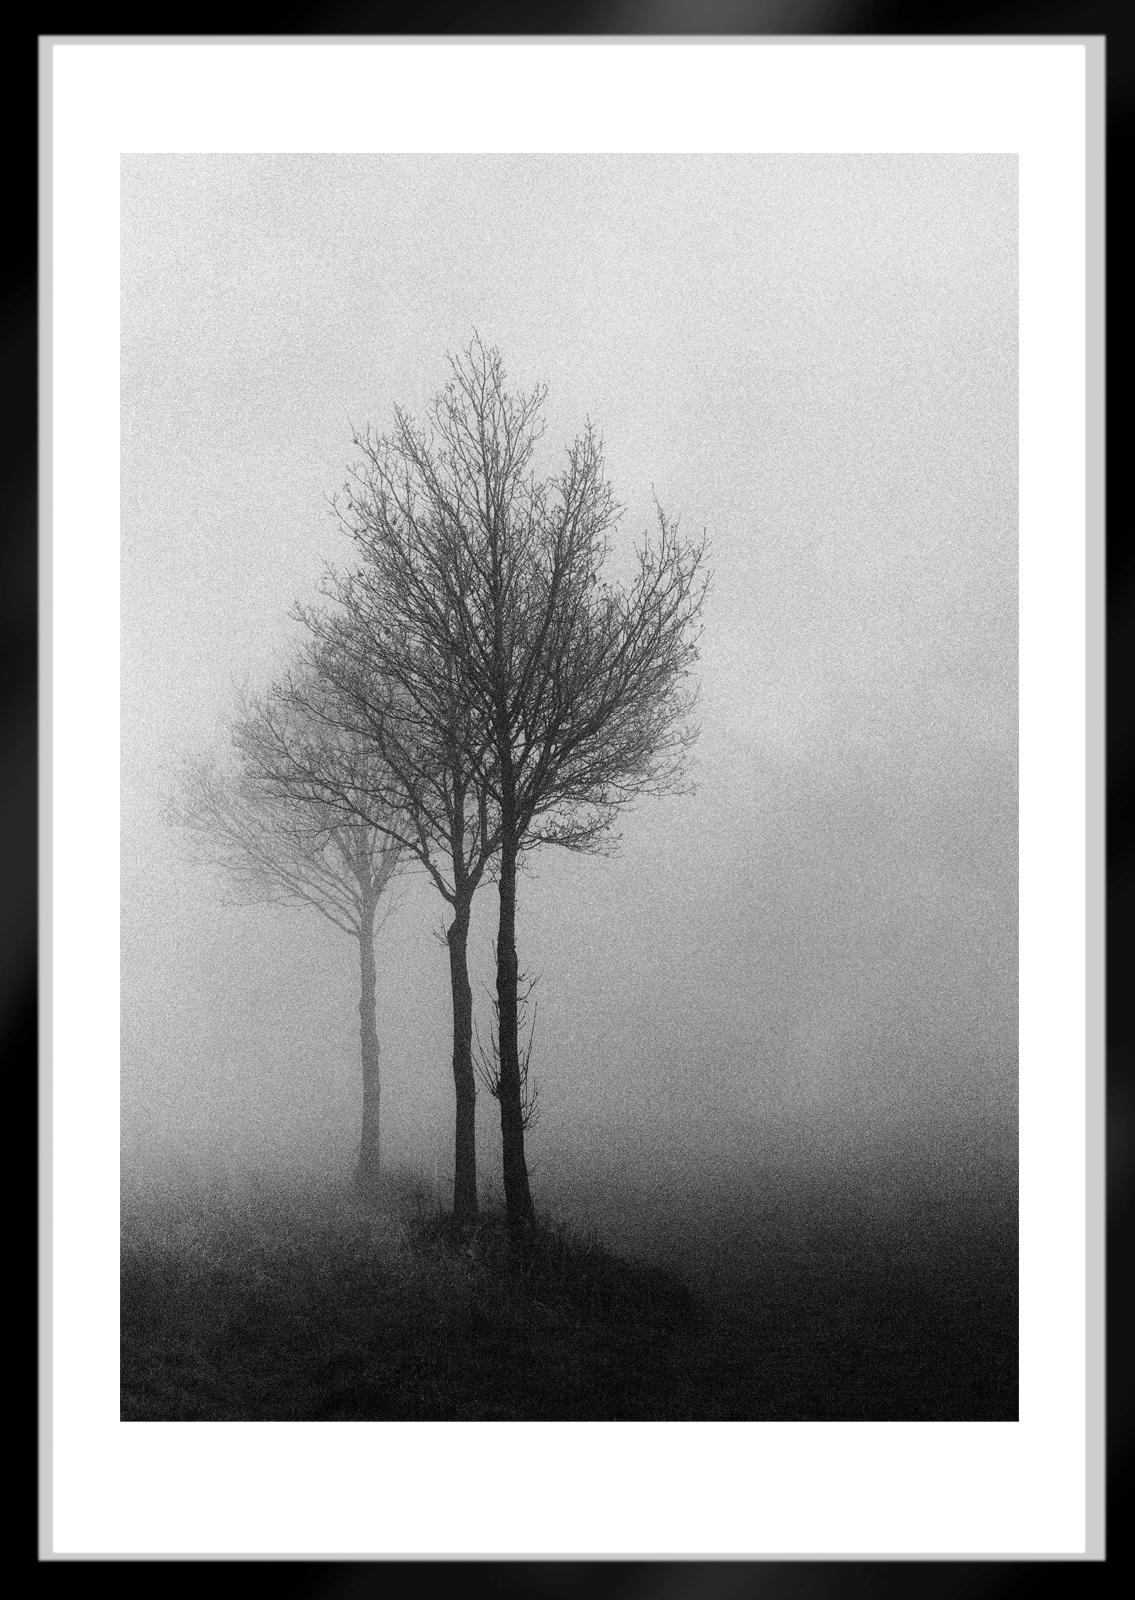 3 Bäume – signierter Naturdruck in limitierter Auflage, Schwarz-Weiß-Foto, Baum im Nebel  (Zeitgenössisch), Photograph, von Ian Sanderson